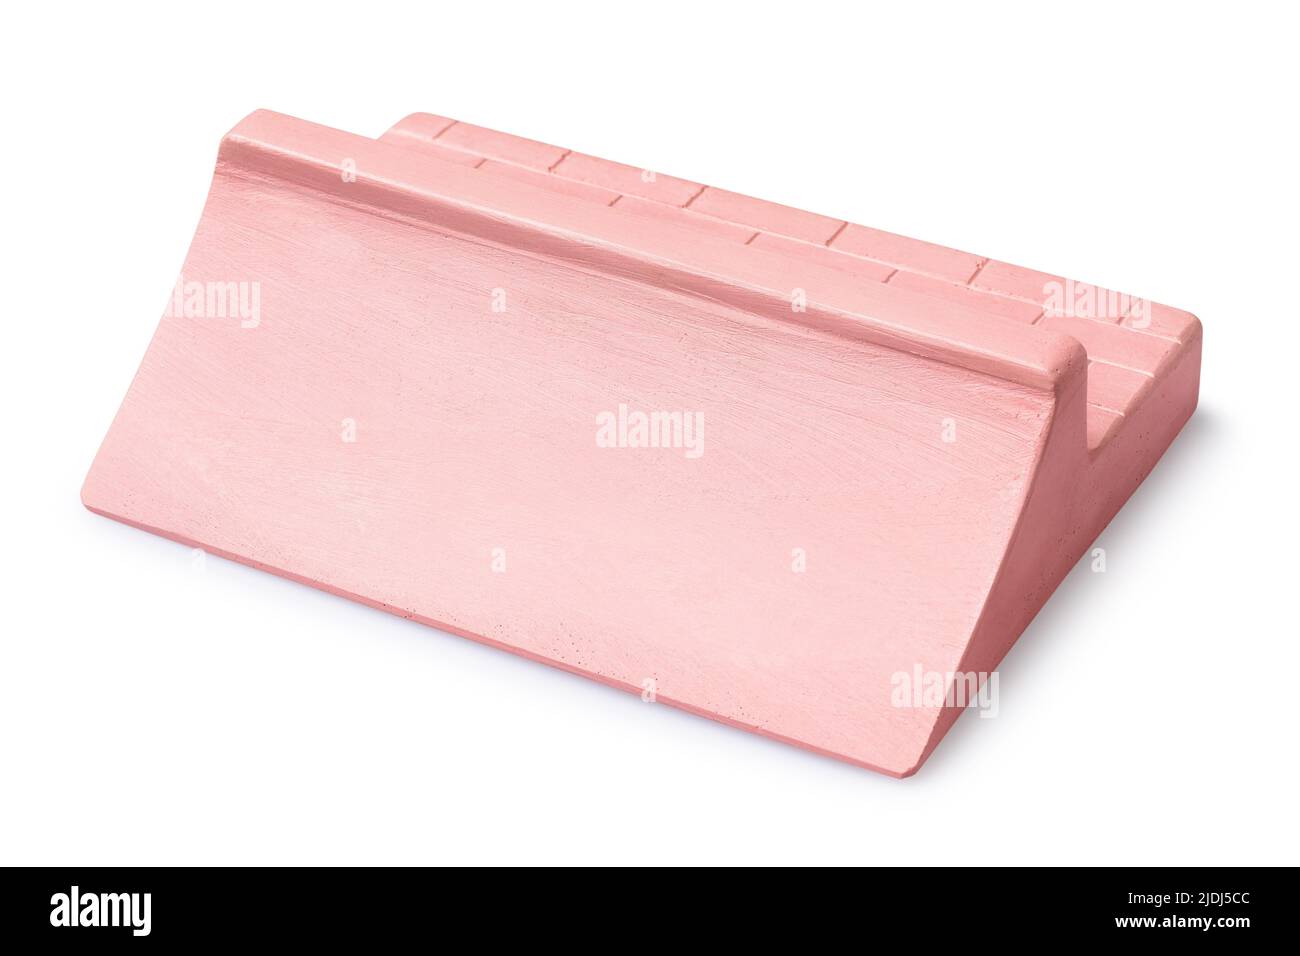 Rampa de yeso rosa con dos lados para fingerboarding, aislada sobre un fondo blanco Foto de stock